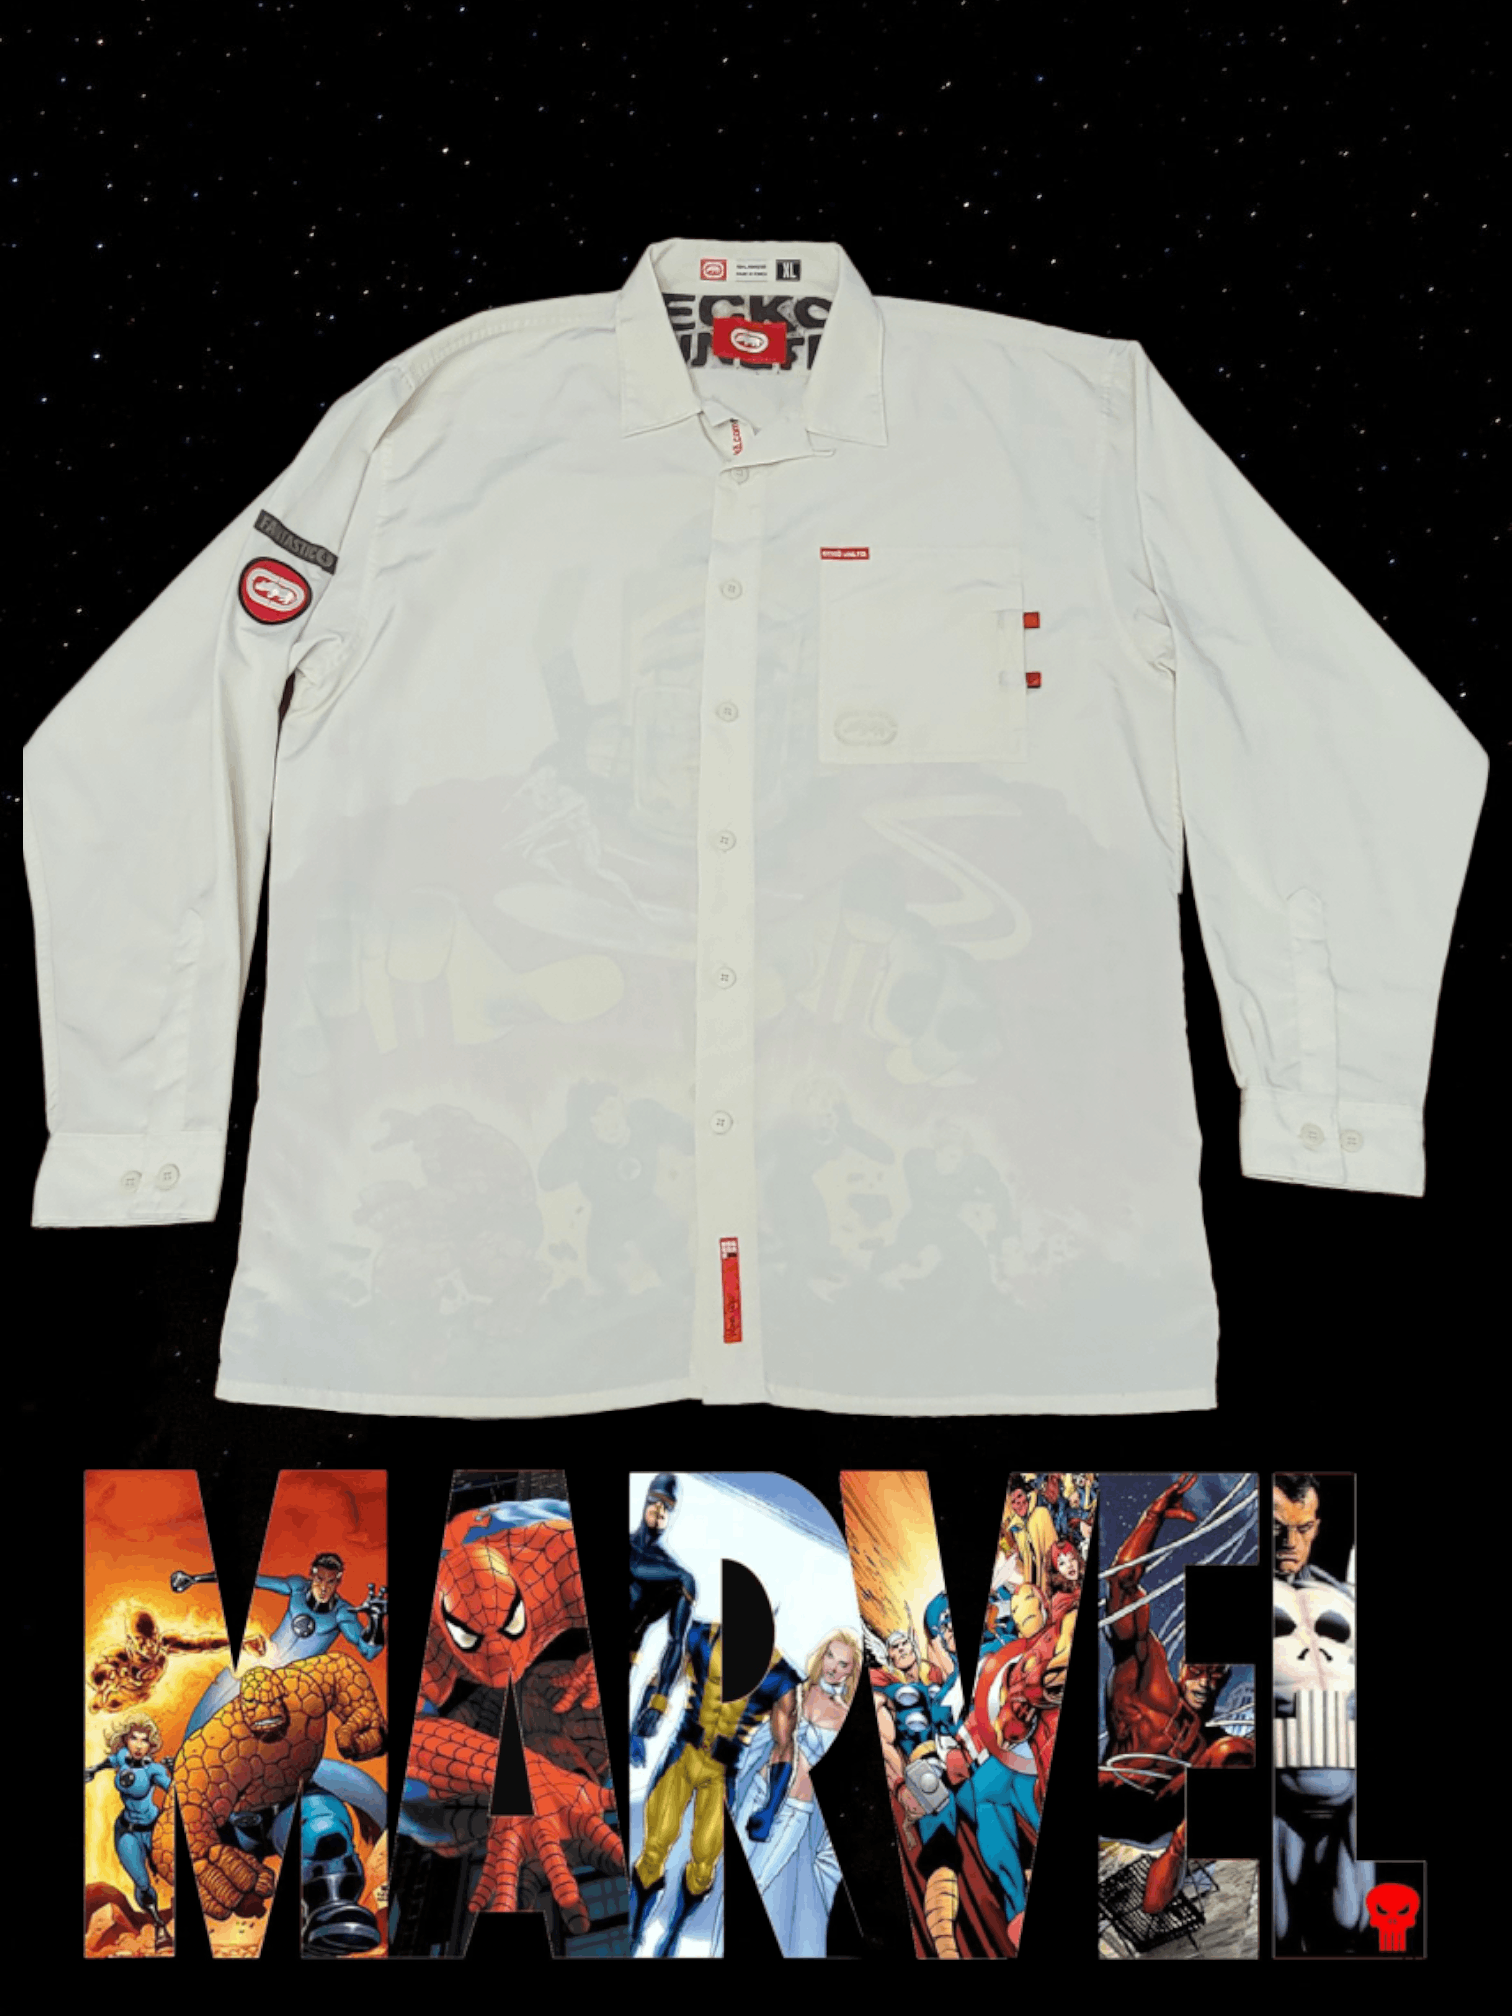 Marvel Comics Rare Vintage Ecko Unltd. Marvel Fantastic 4 XL L/S Shirt Size US XL / EU 56 / 4 - 1 Preview